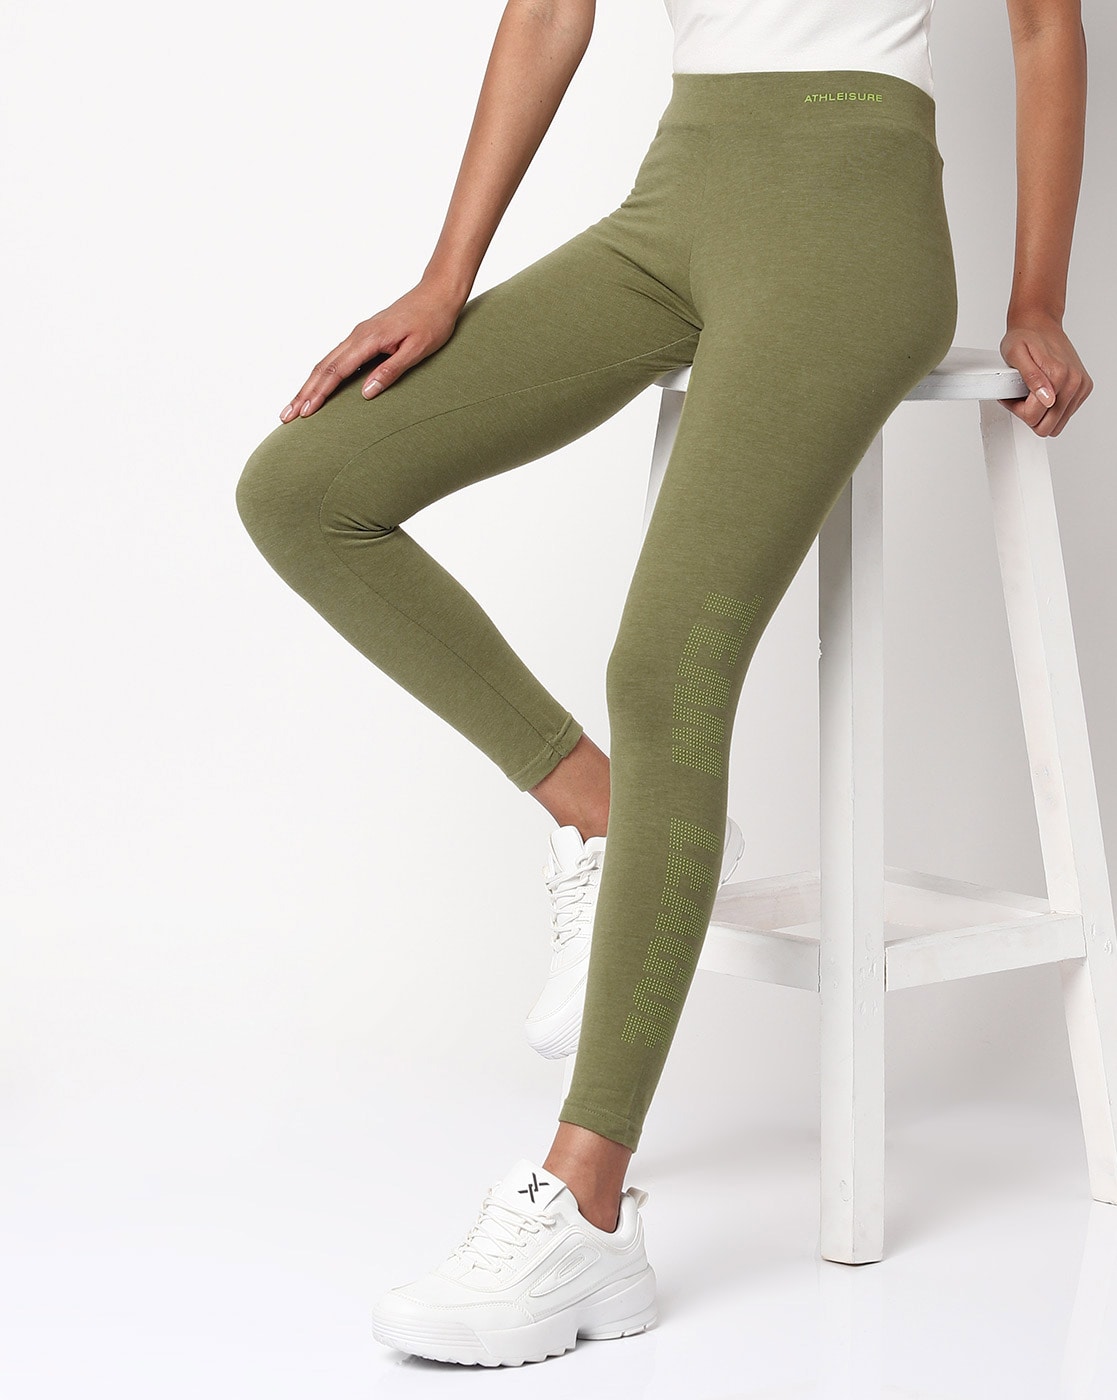 Buy Olive Green Leggings for Women by Teamspirit Online